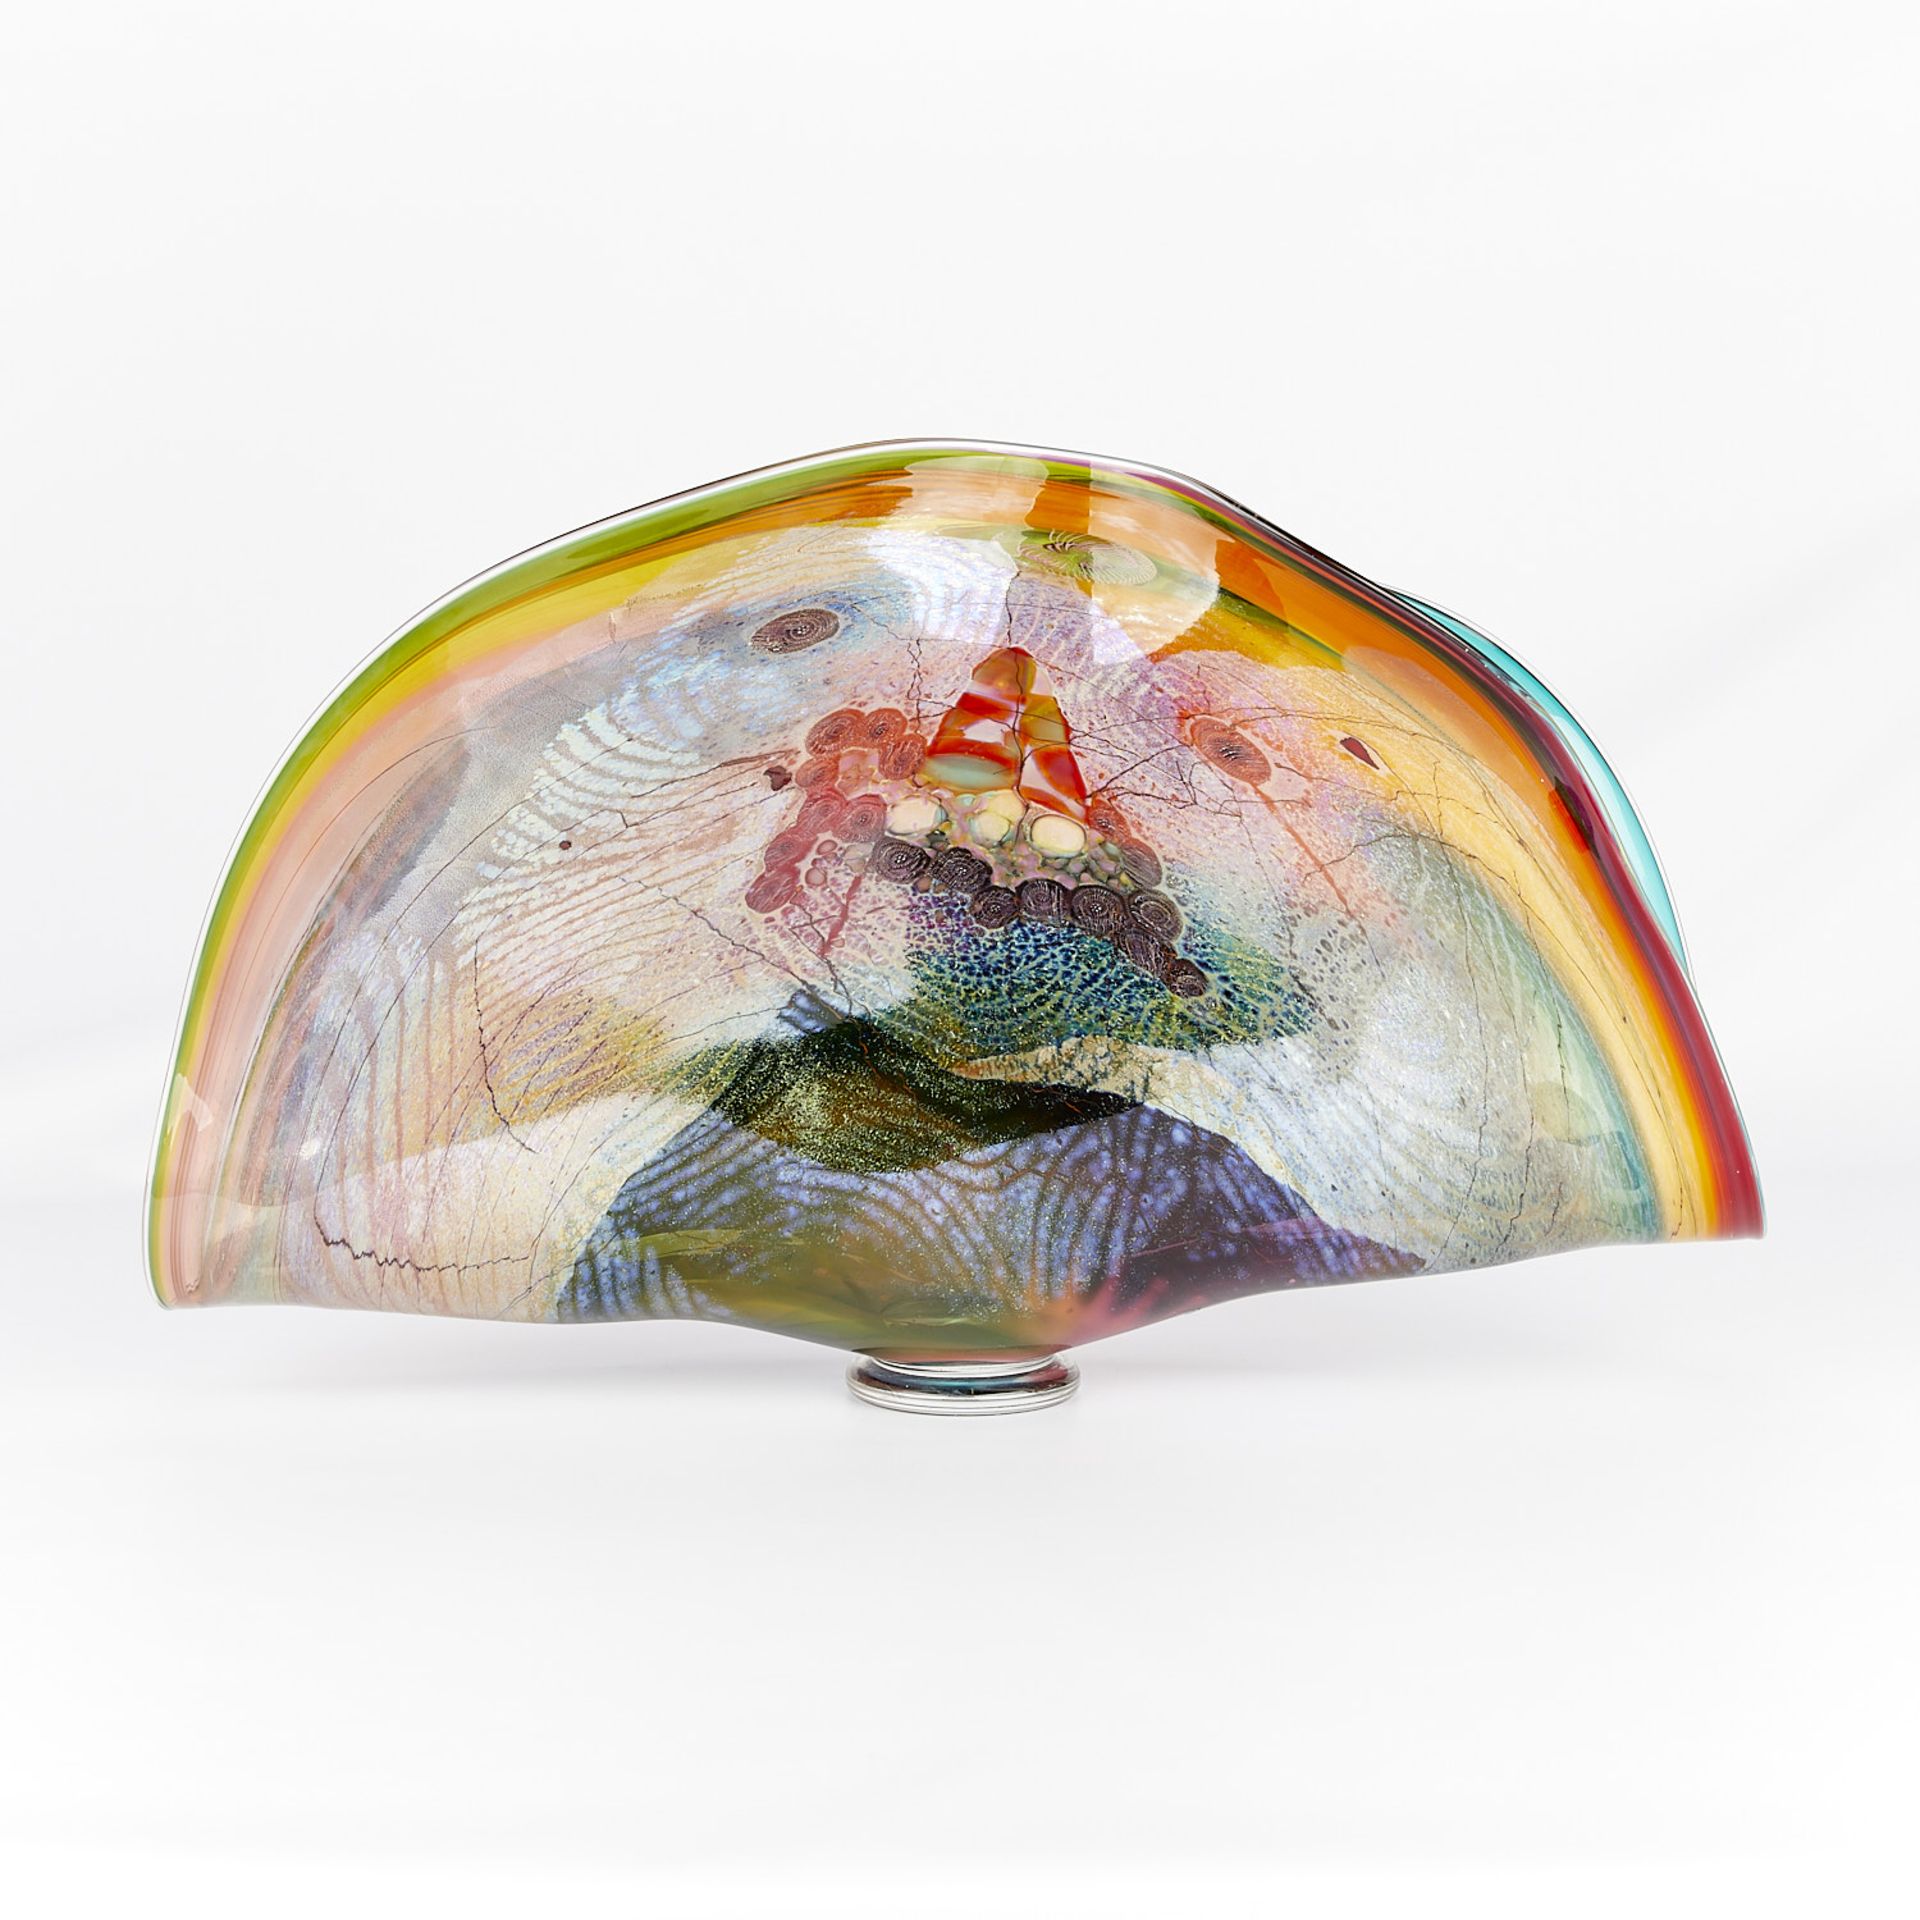 Chris Hawthorne Folded Fan Glass Vessel - Image 6 of 17